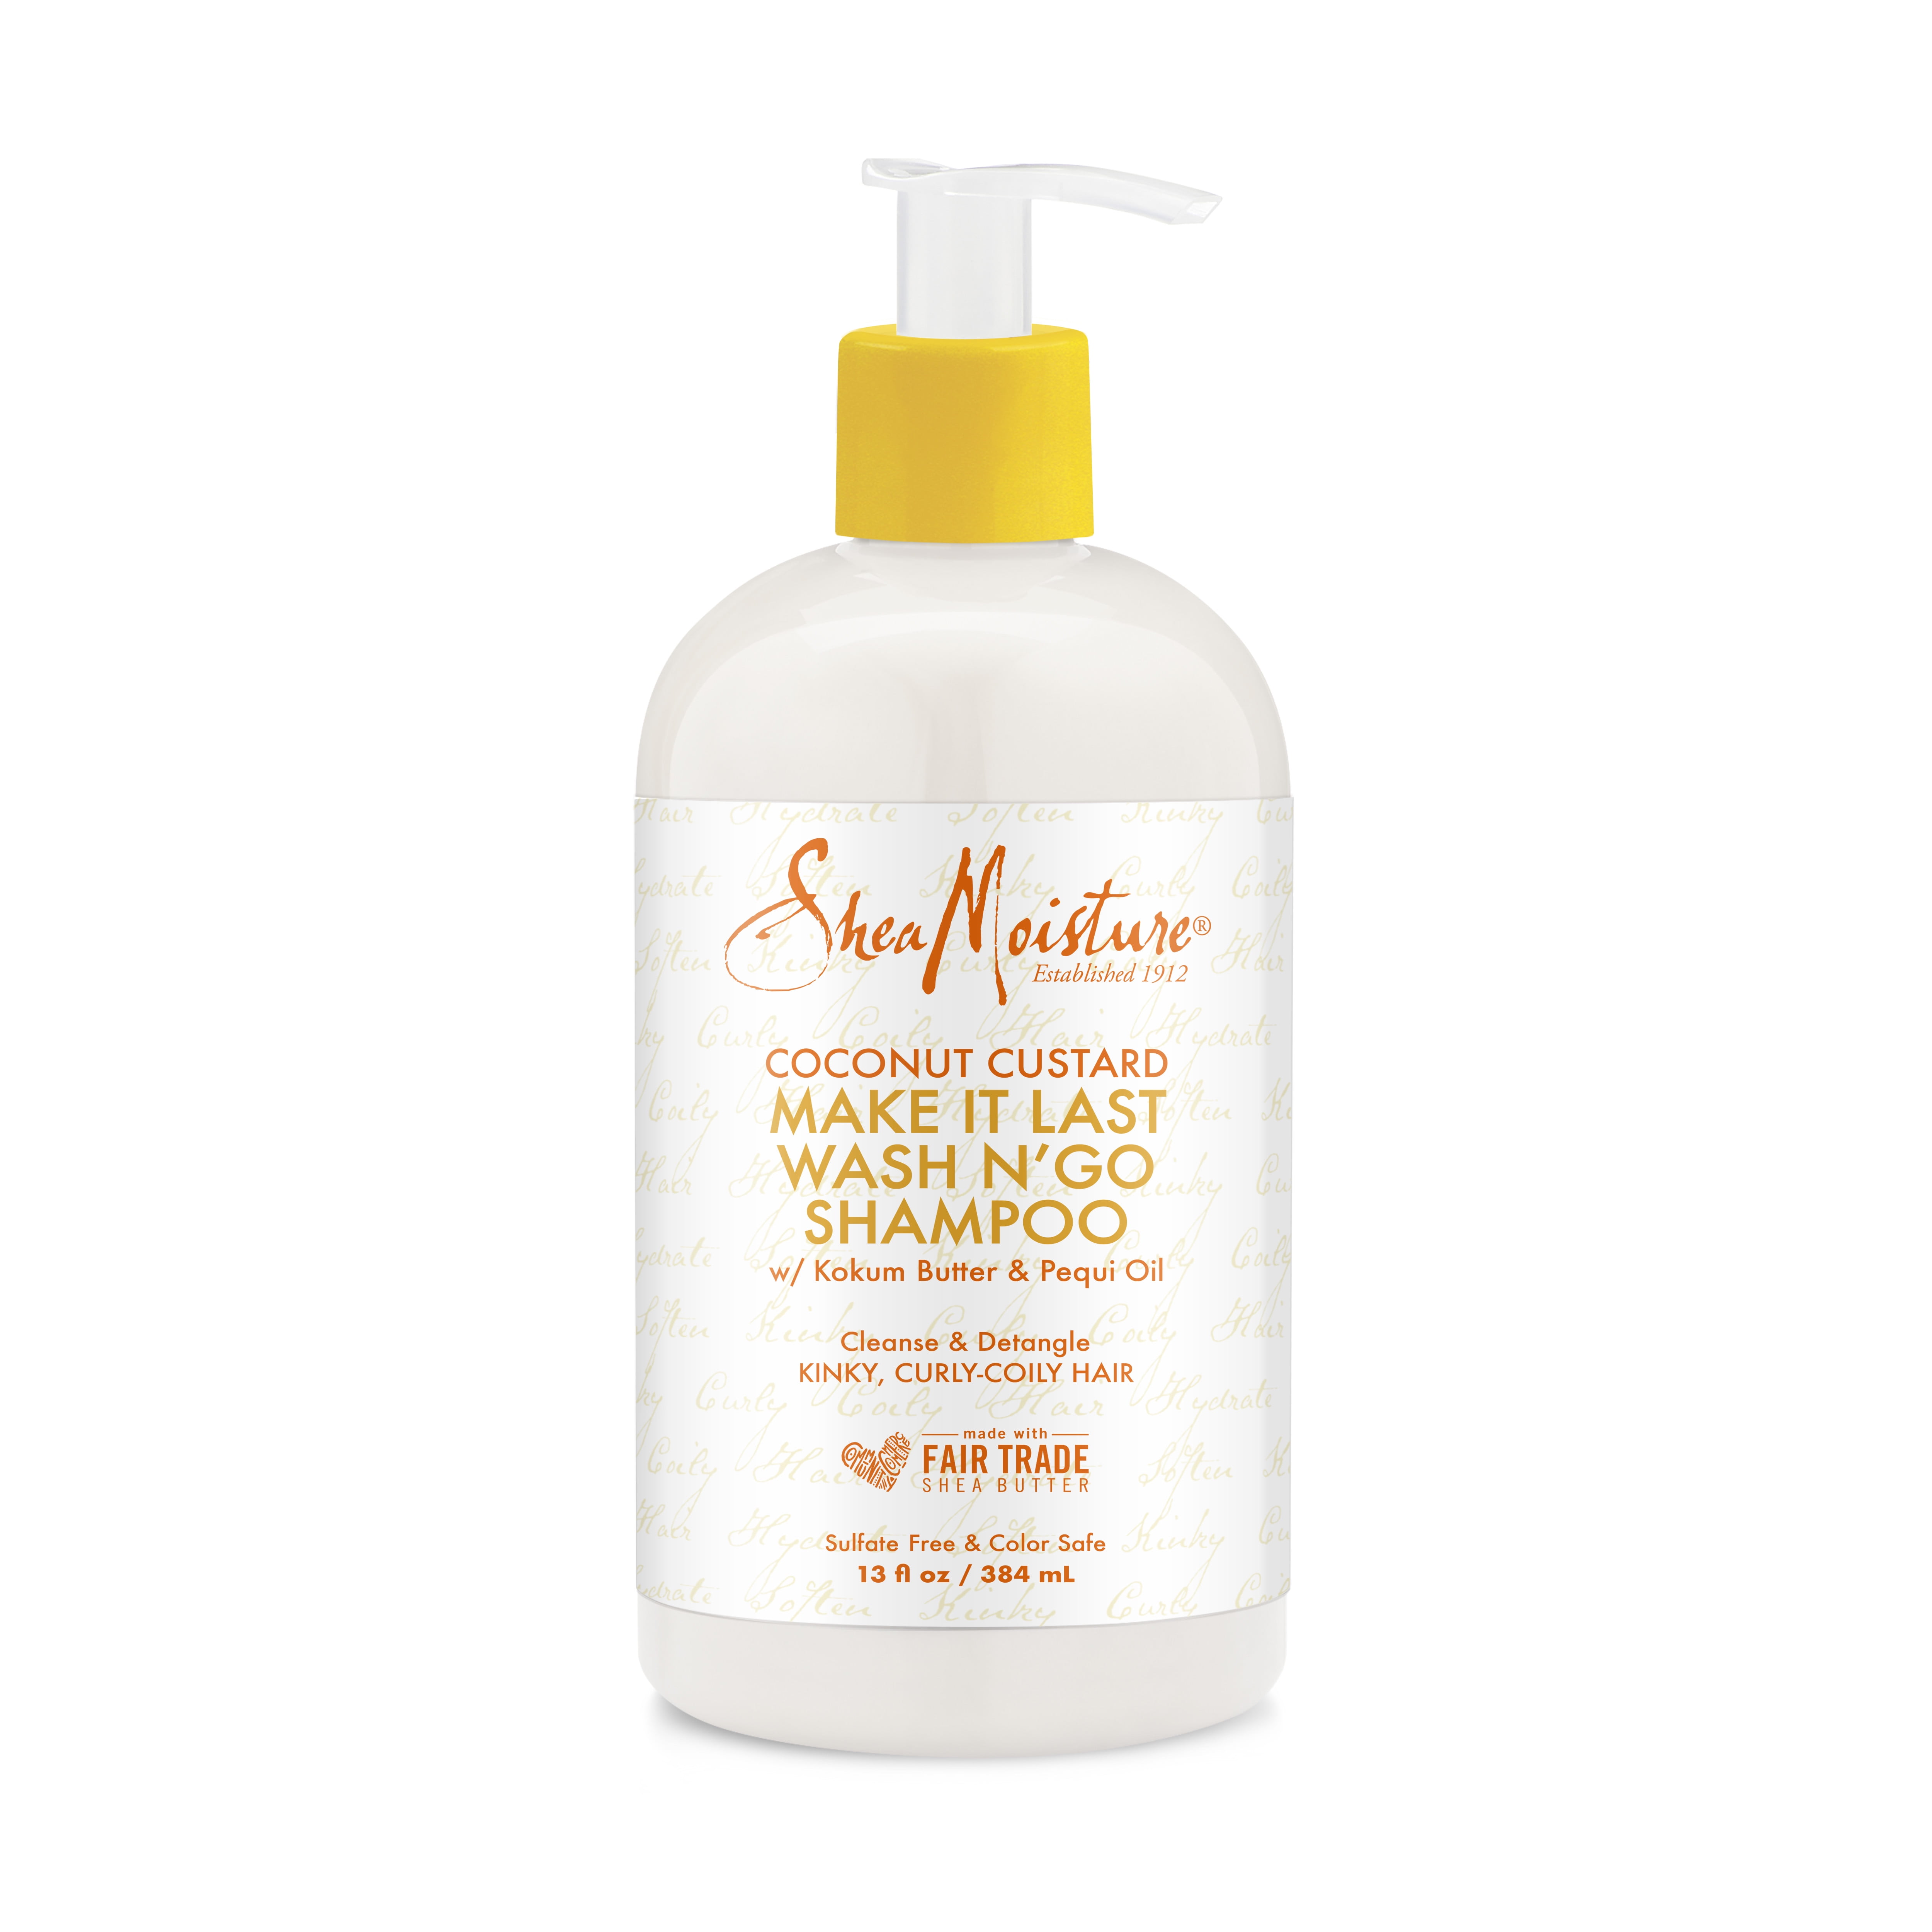 SheaMoisture N' Go Shampoo Phthalate Free to Cleanse Detangle Curly Hair, 13 oz - Walmart.com